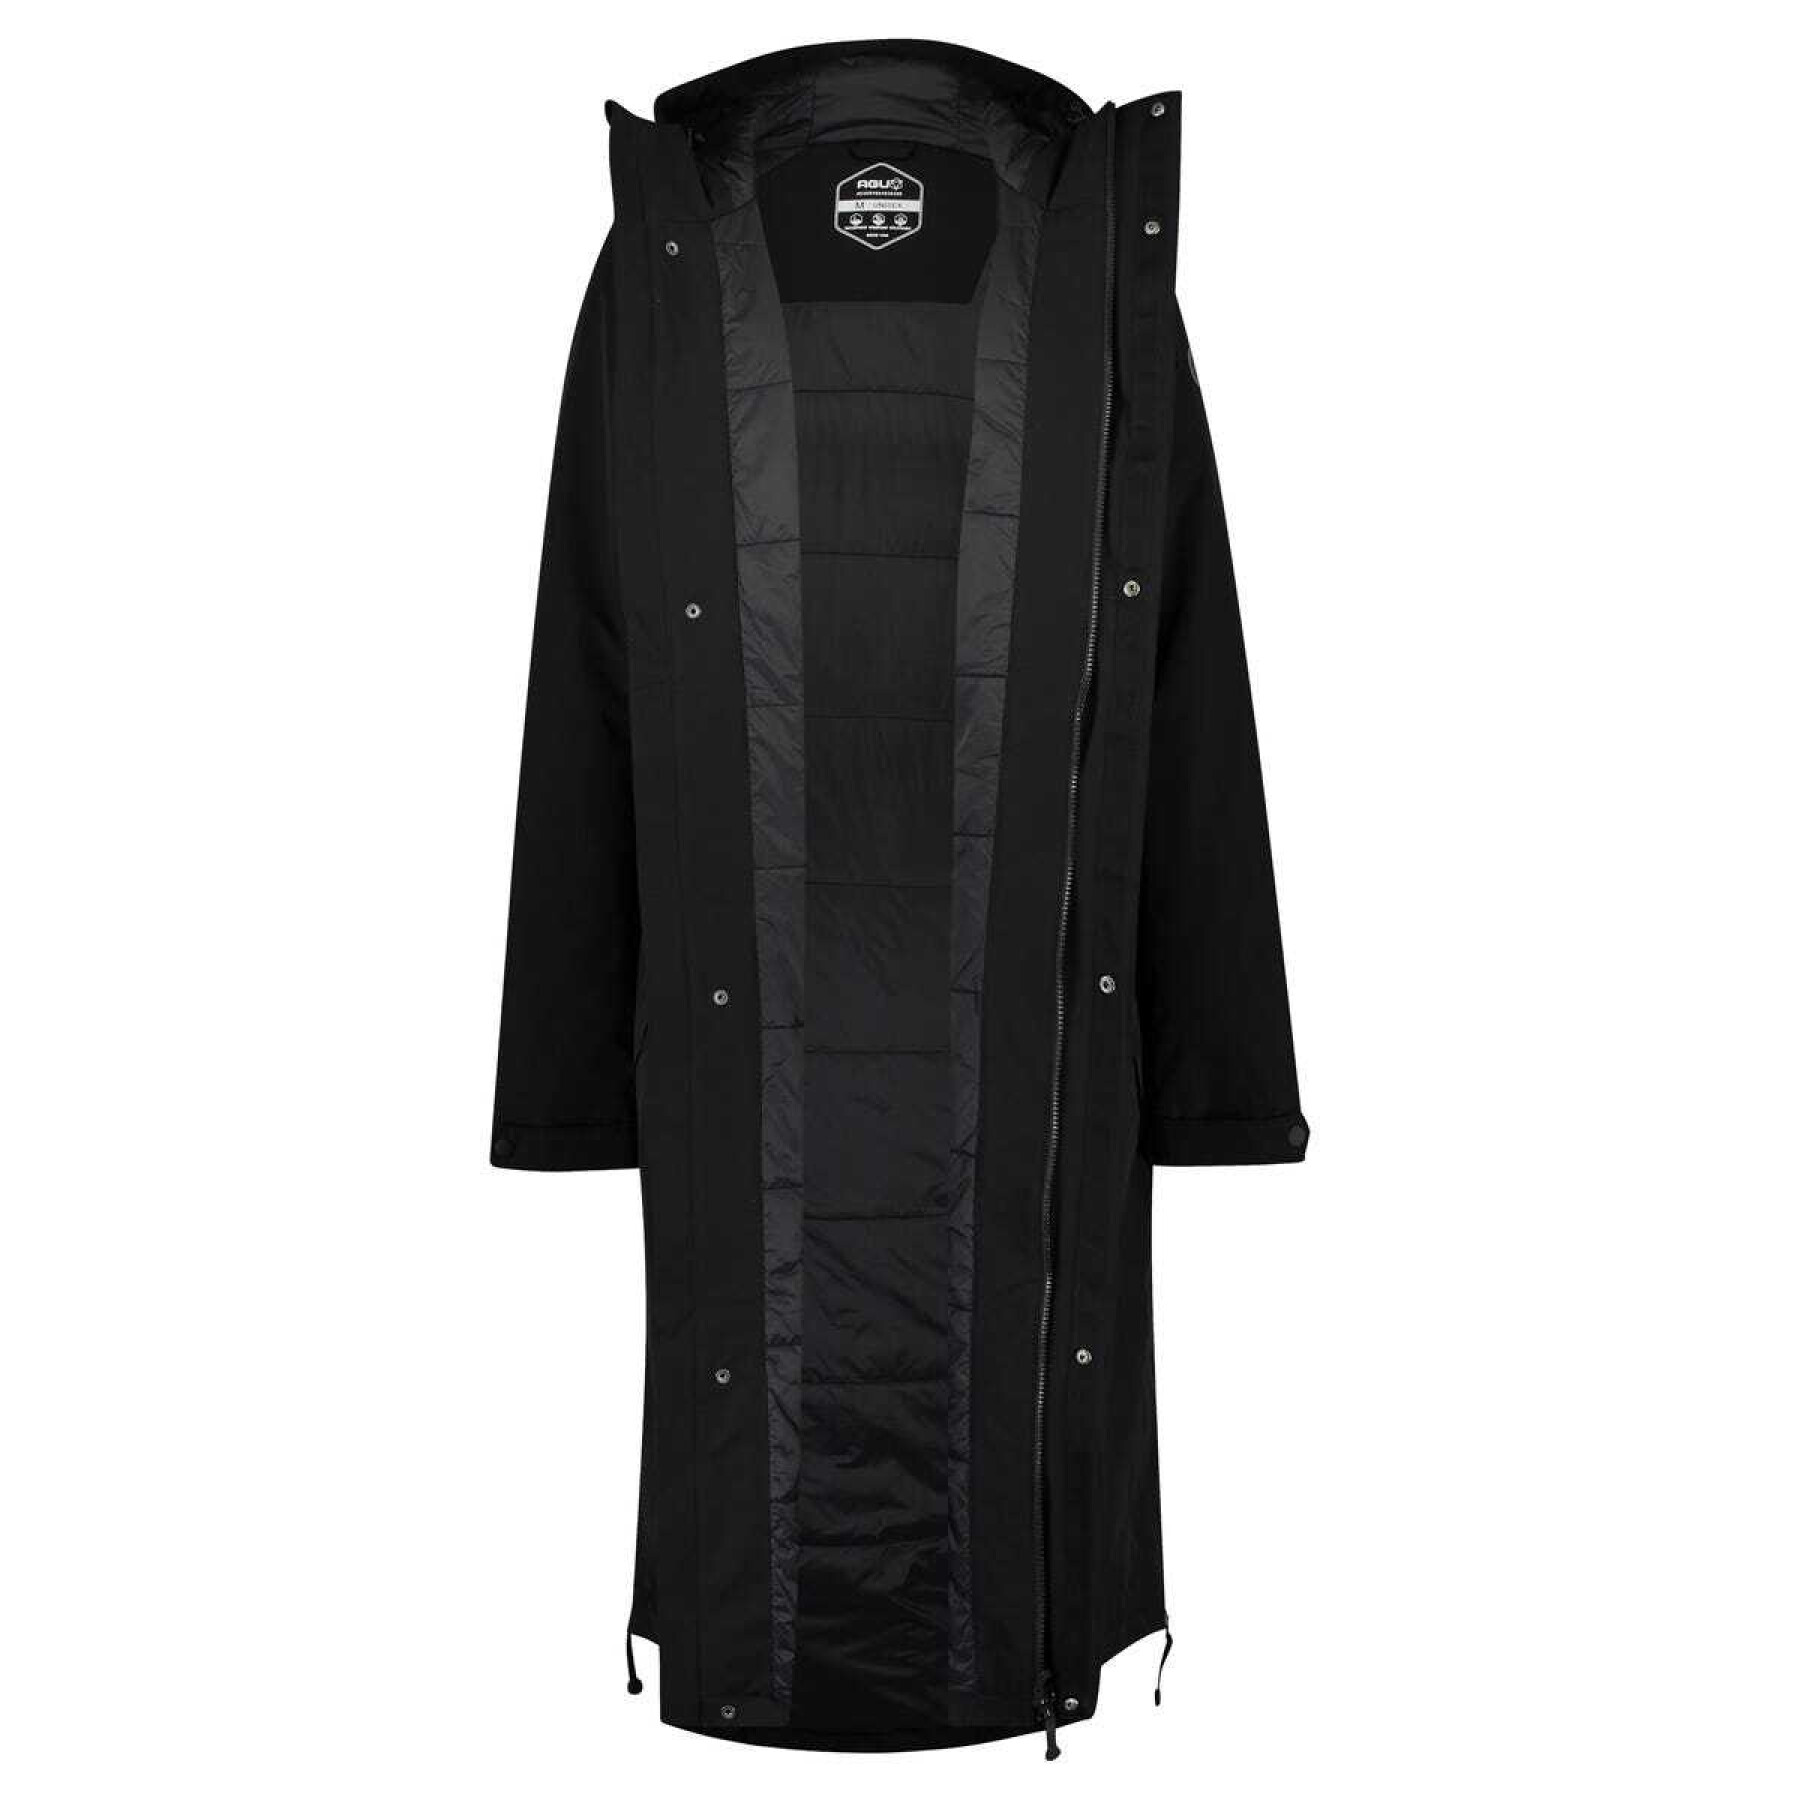 Women's winter waterproof jacket Agu City Slicker